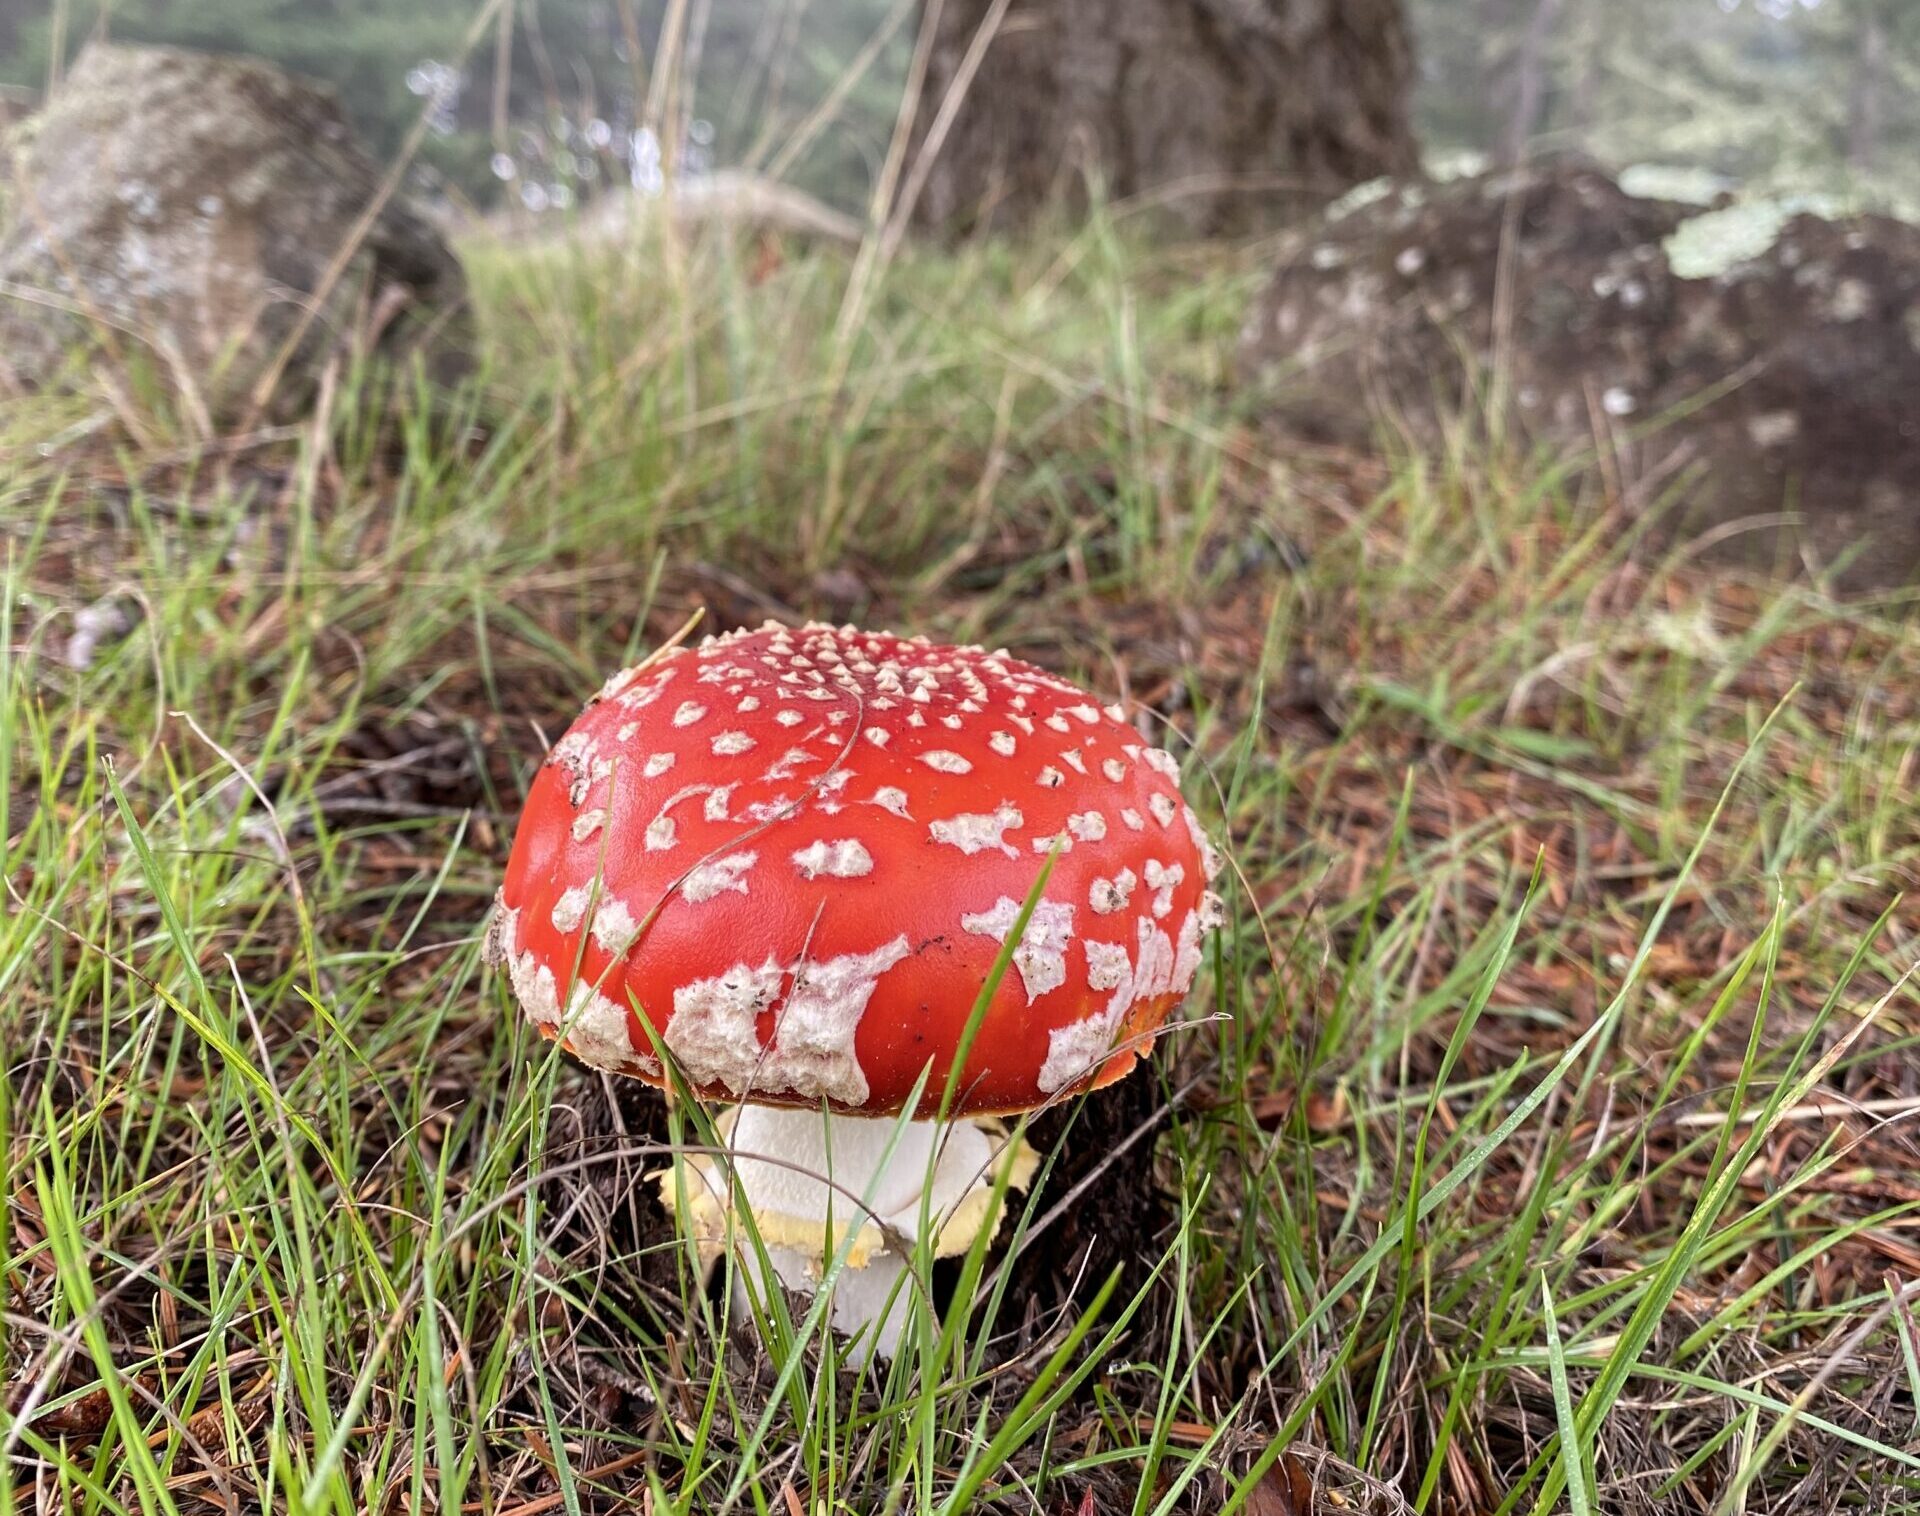 amanita muscaria poisonous mushroom